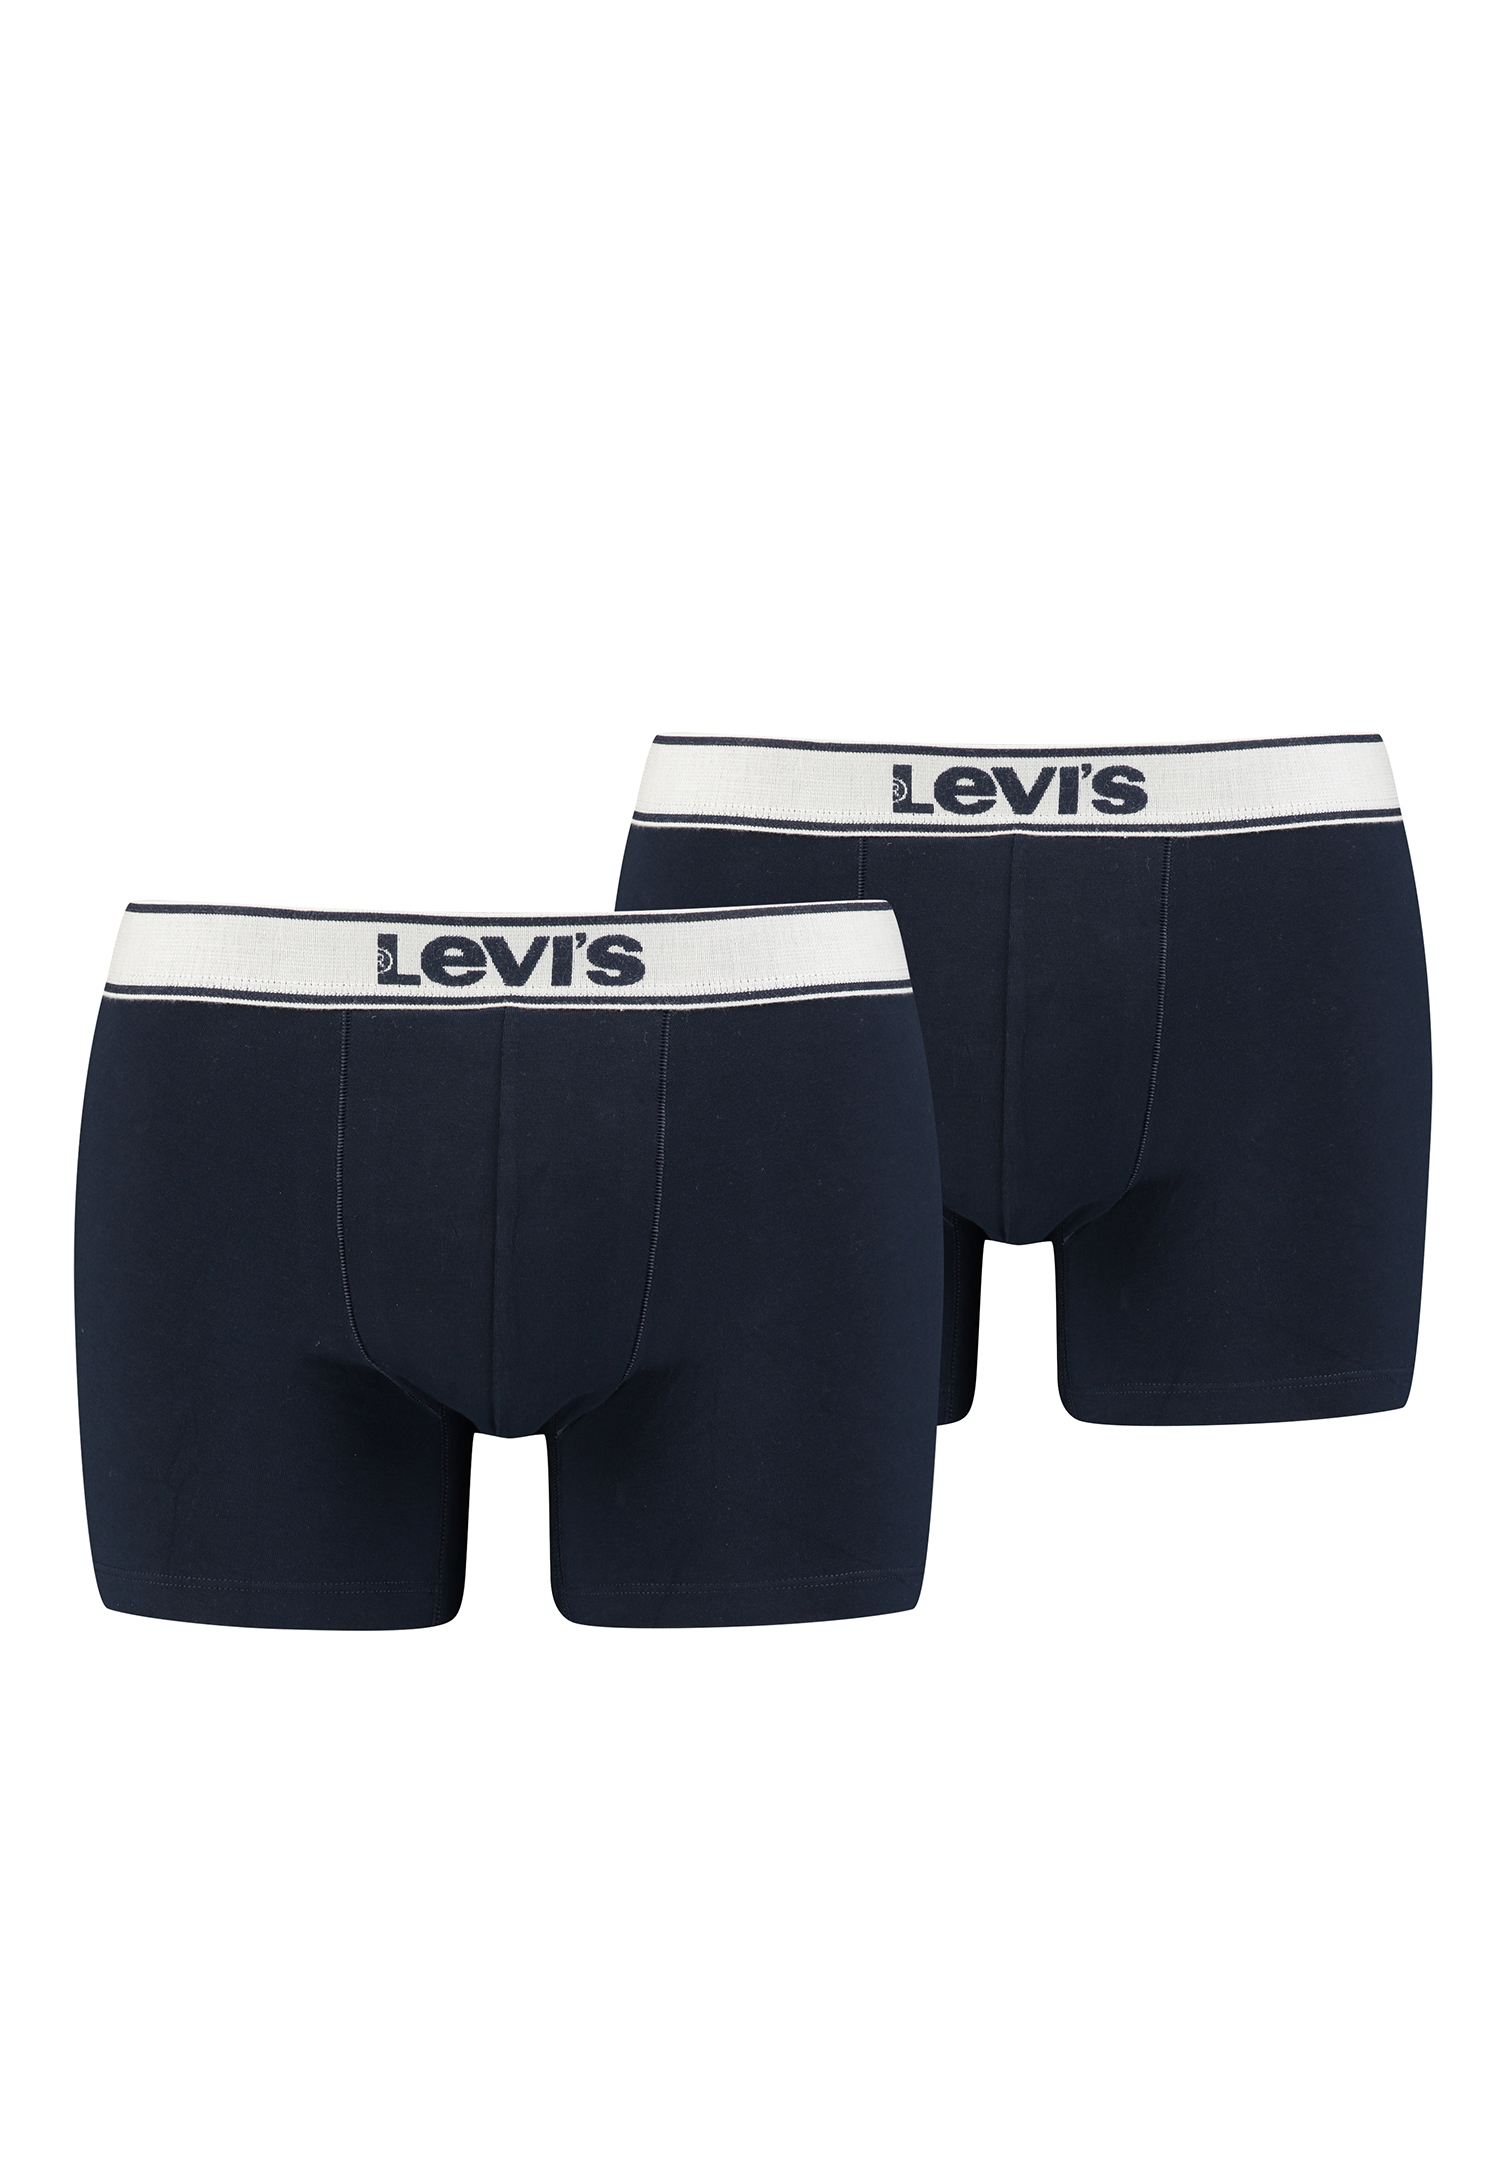 Levi's Mens Vintage Heather Men's Briefs (2 Pack) Boxer Shorts, Navy, XXL